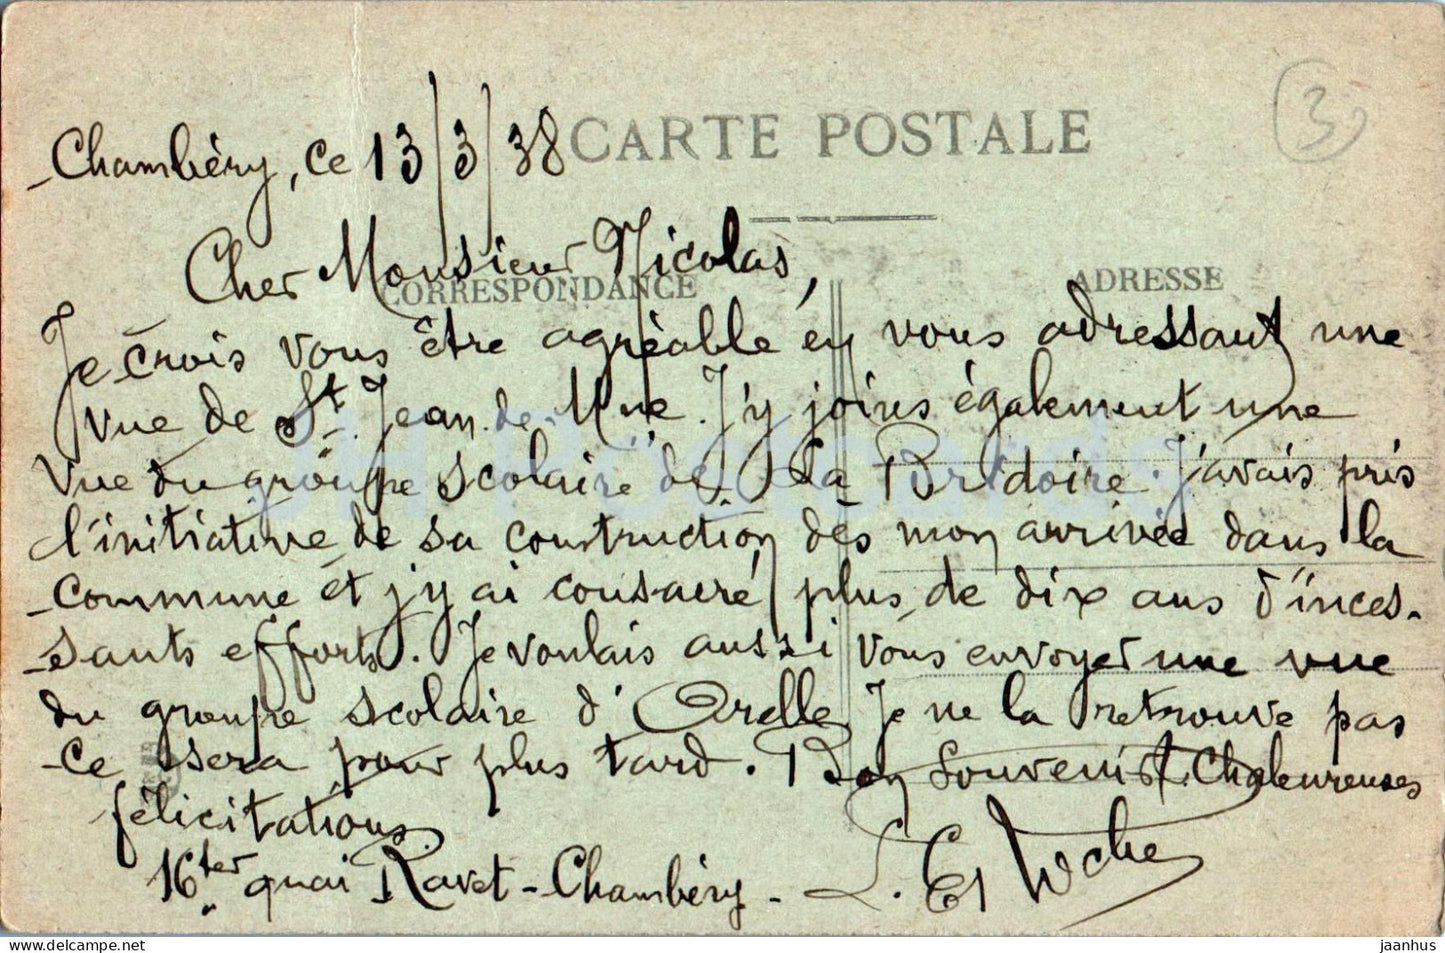 St Jean de Maurienne - La Vallee des Arves et le Mont Charvin 2207 m - 1453 - alte Postkarte - 1938 - Frankreich - gebraucht 